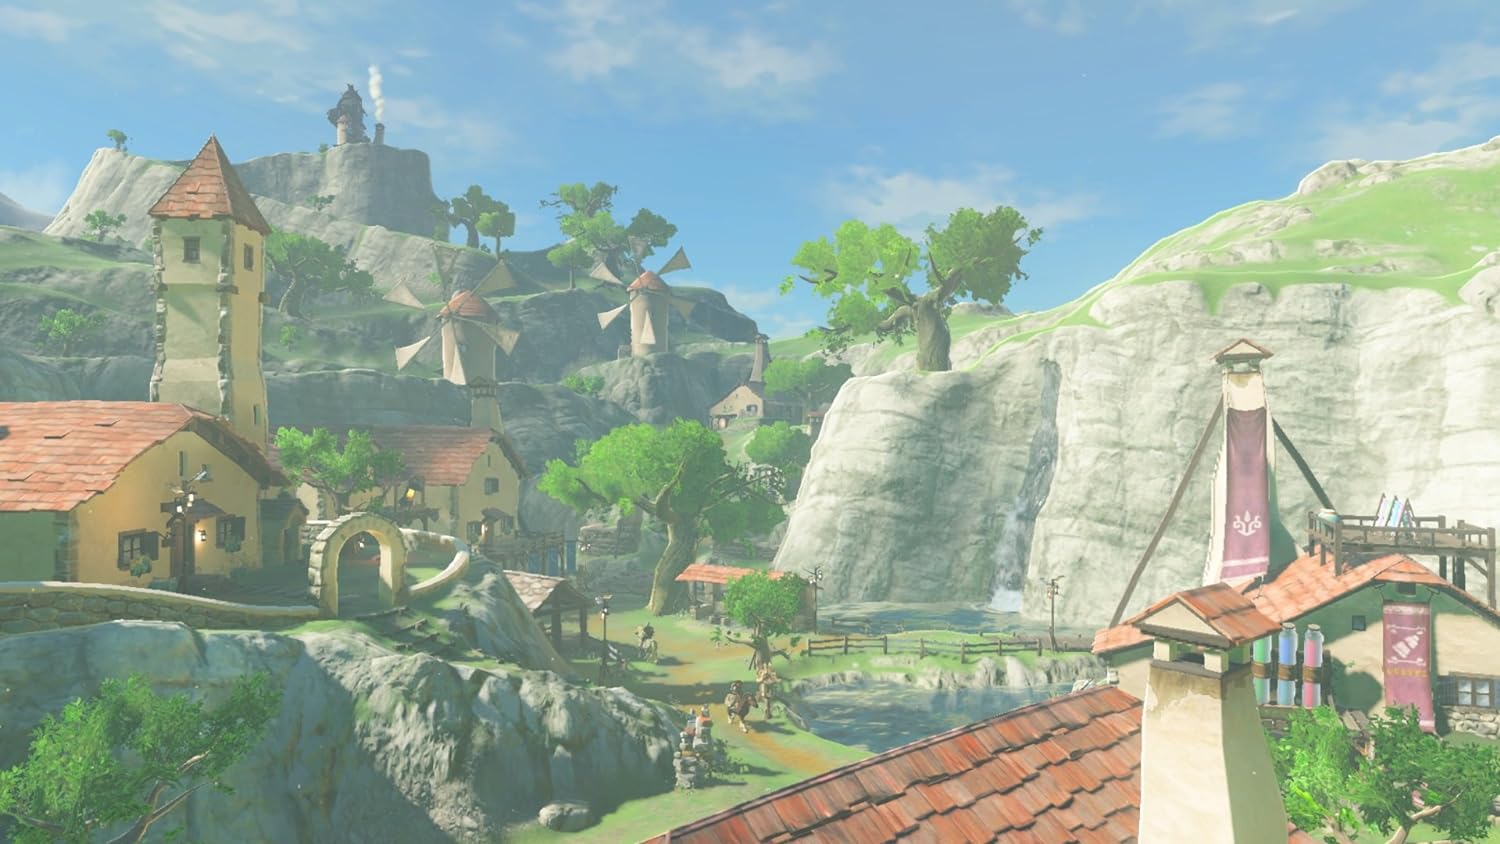 Pour les Fans de Nintendo Wii U : Découvrez les derniers Jeux disponibles  de NetGamesRetro - Netgamesretro